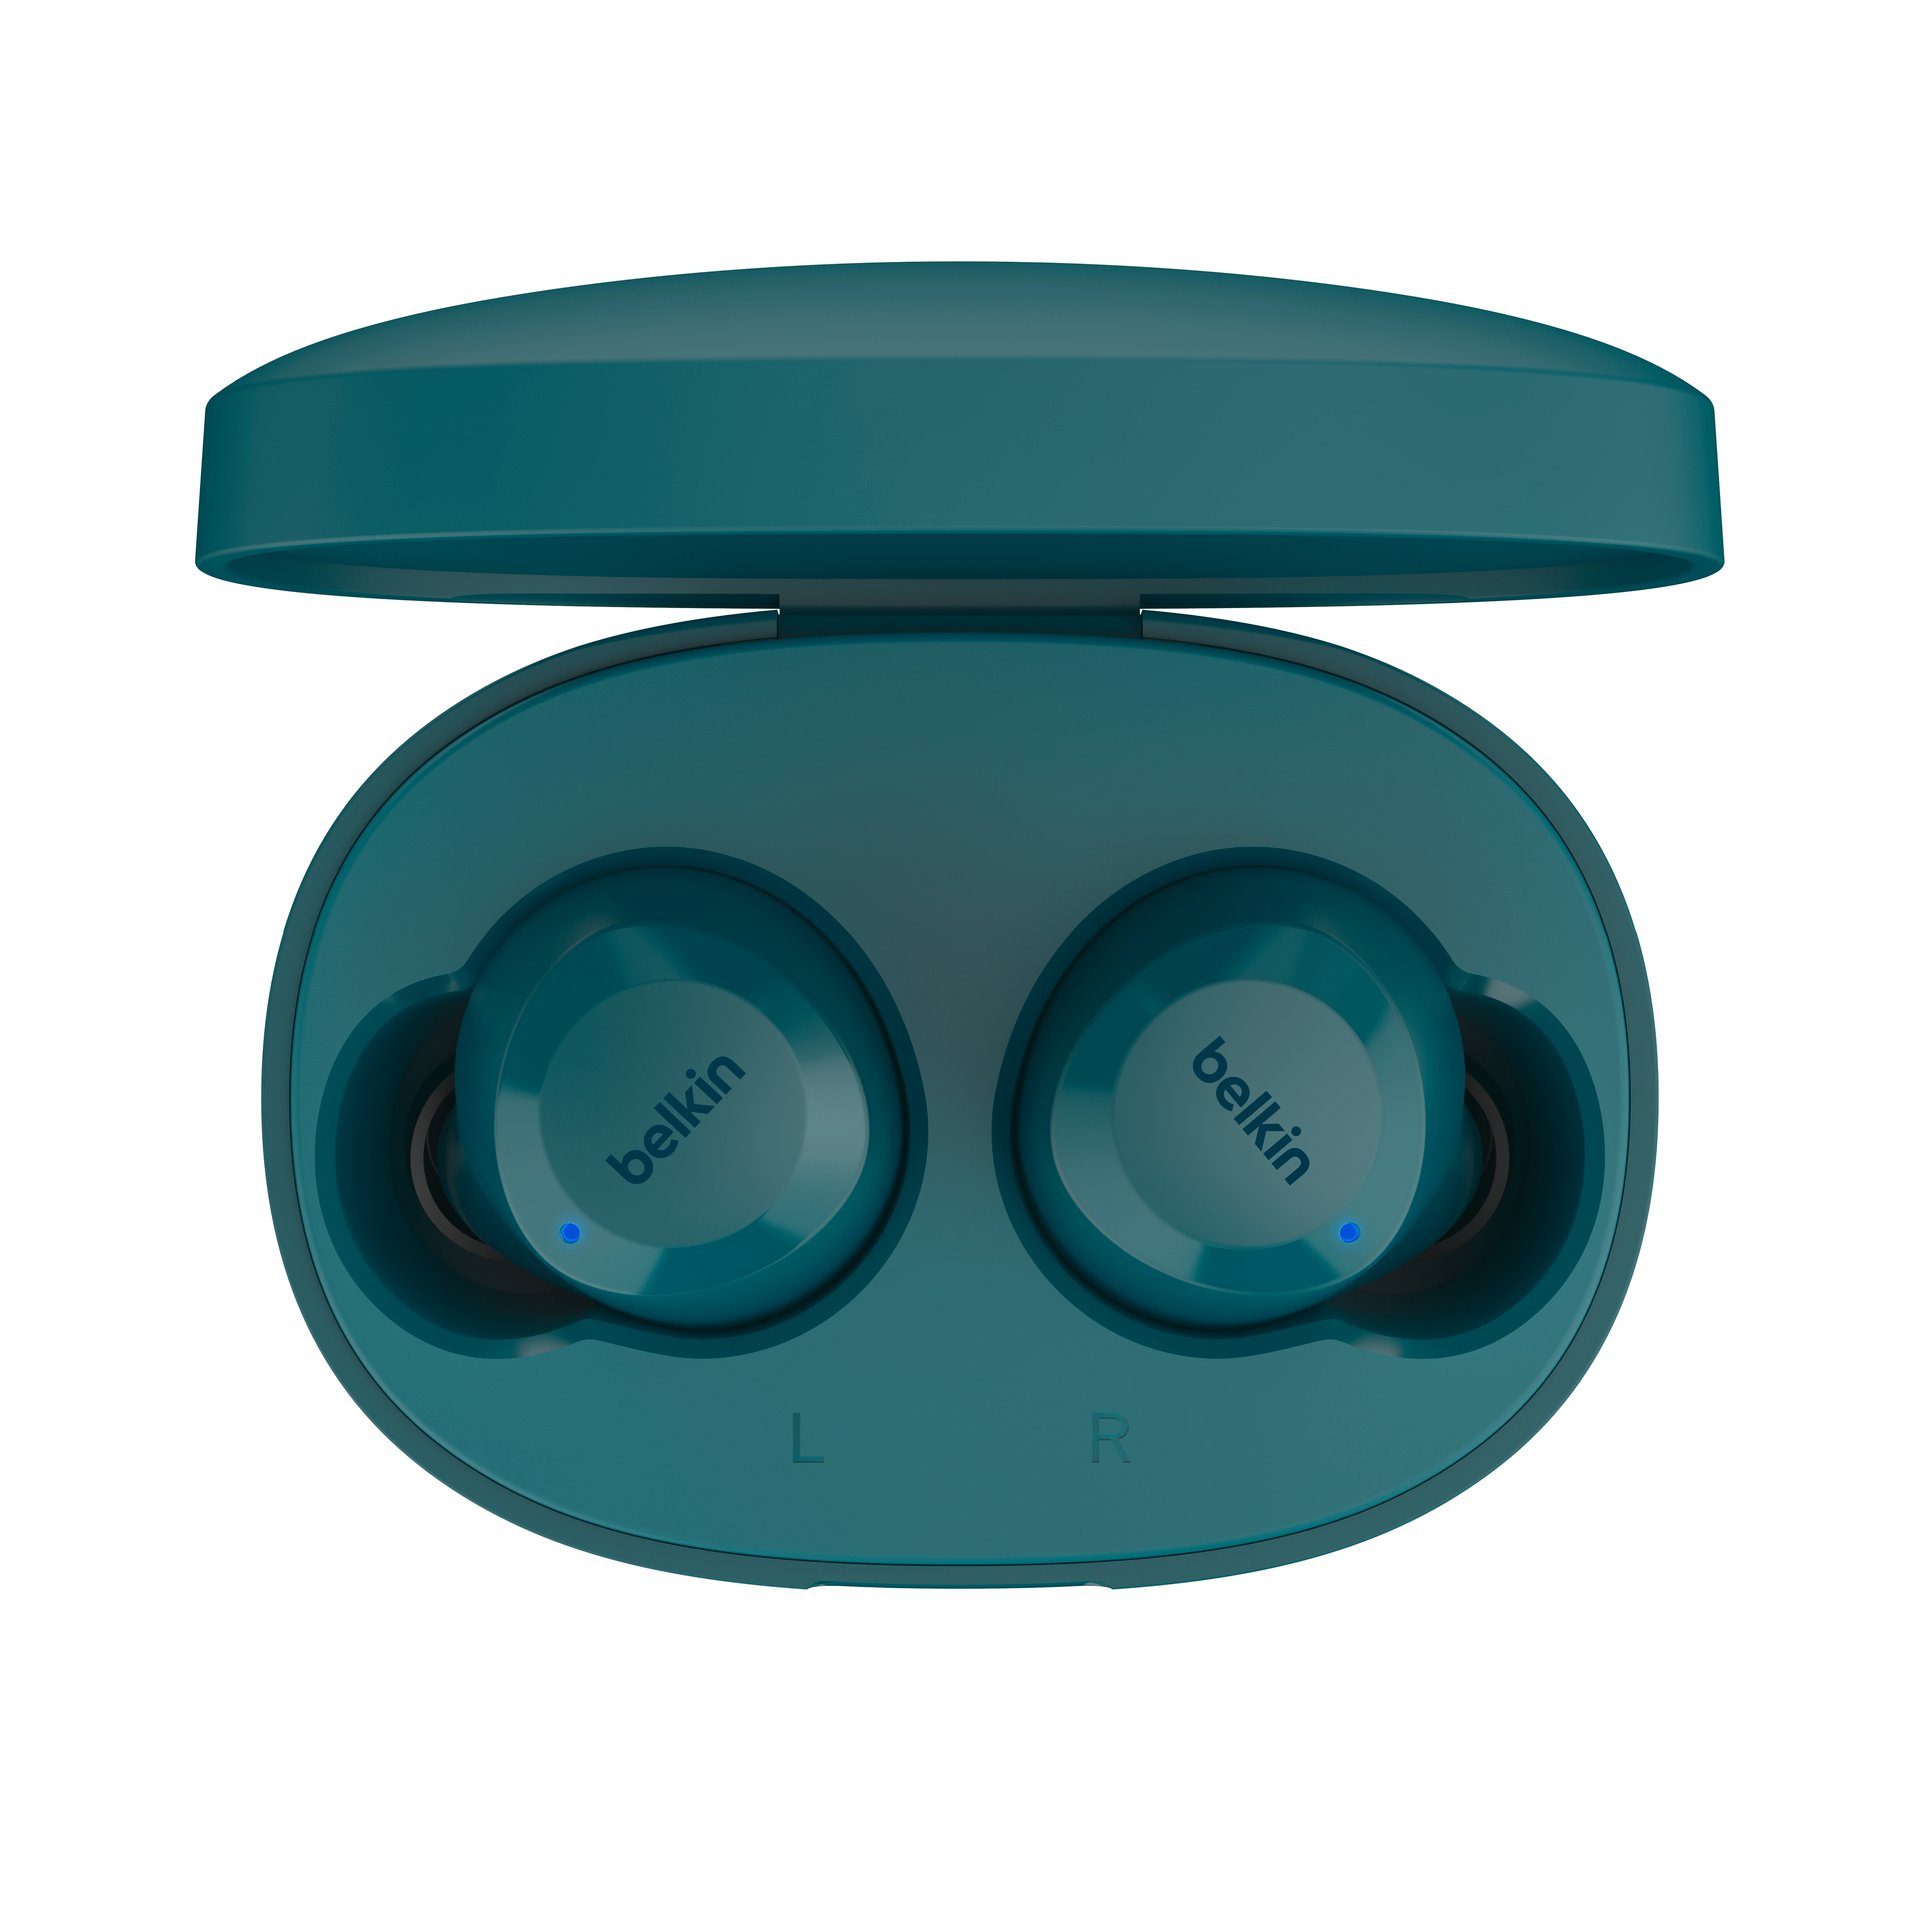 Bolt In-Ear-Kopfhörer wireless Blaugrün SoundForm Belkin